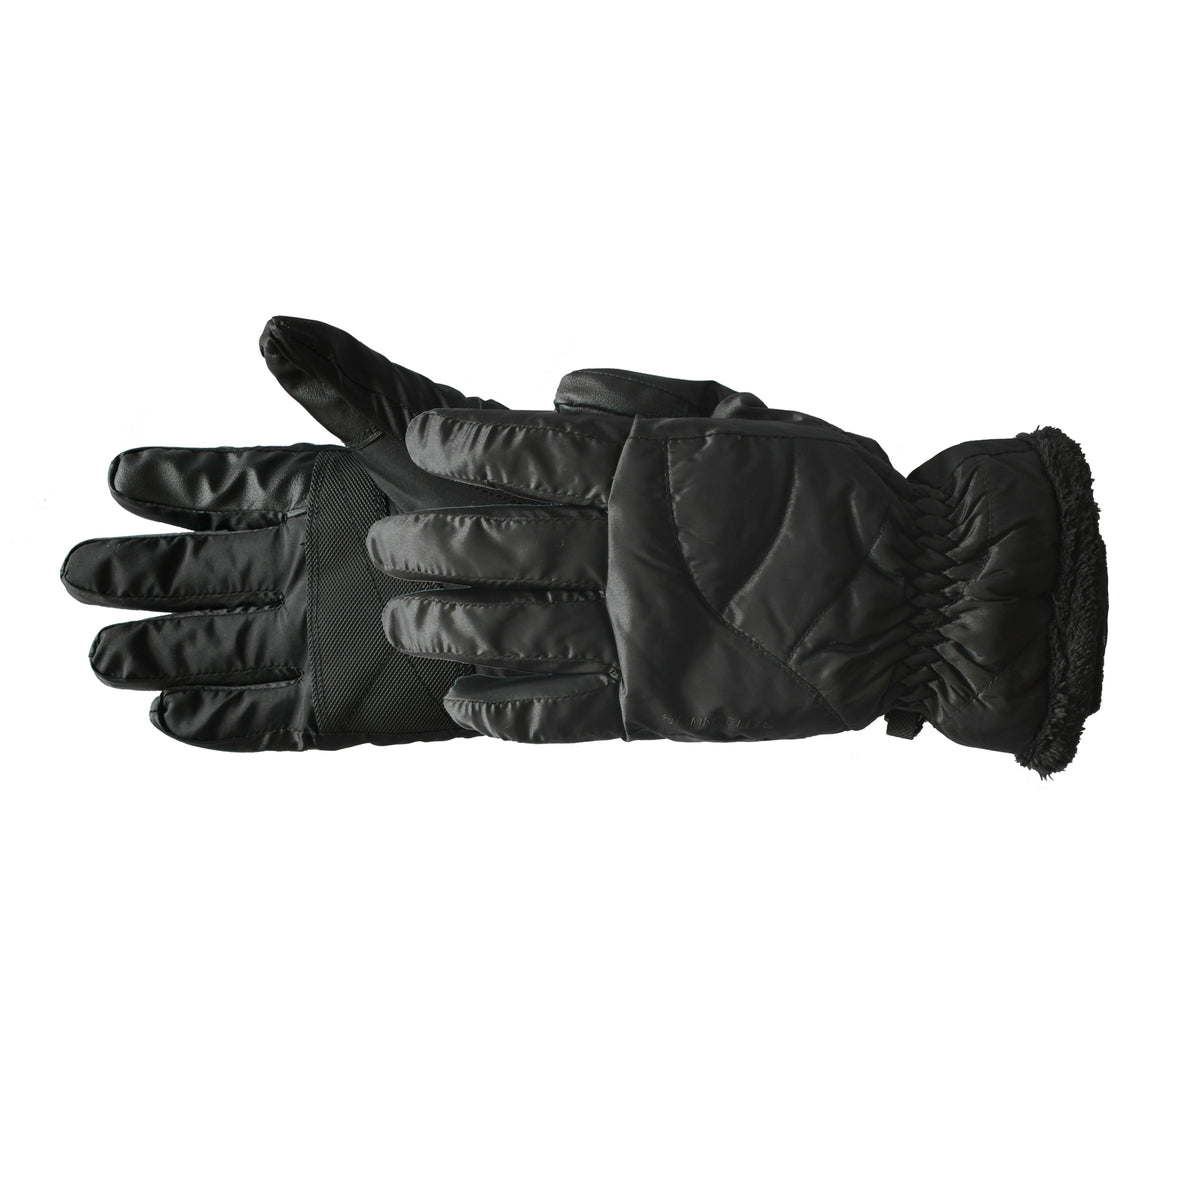 Manzella Women's MARLOW TouchTip Outdoor Ski Gloves